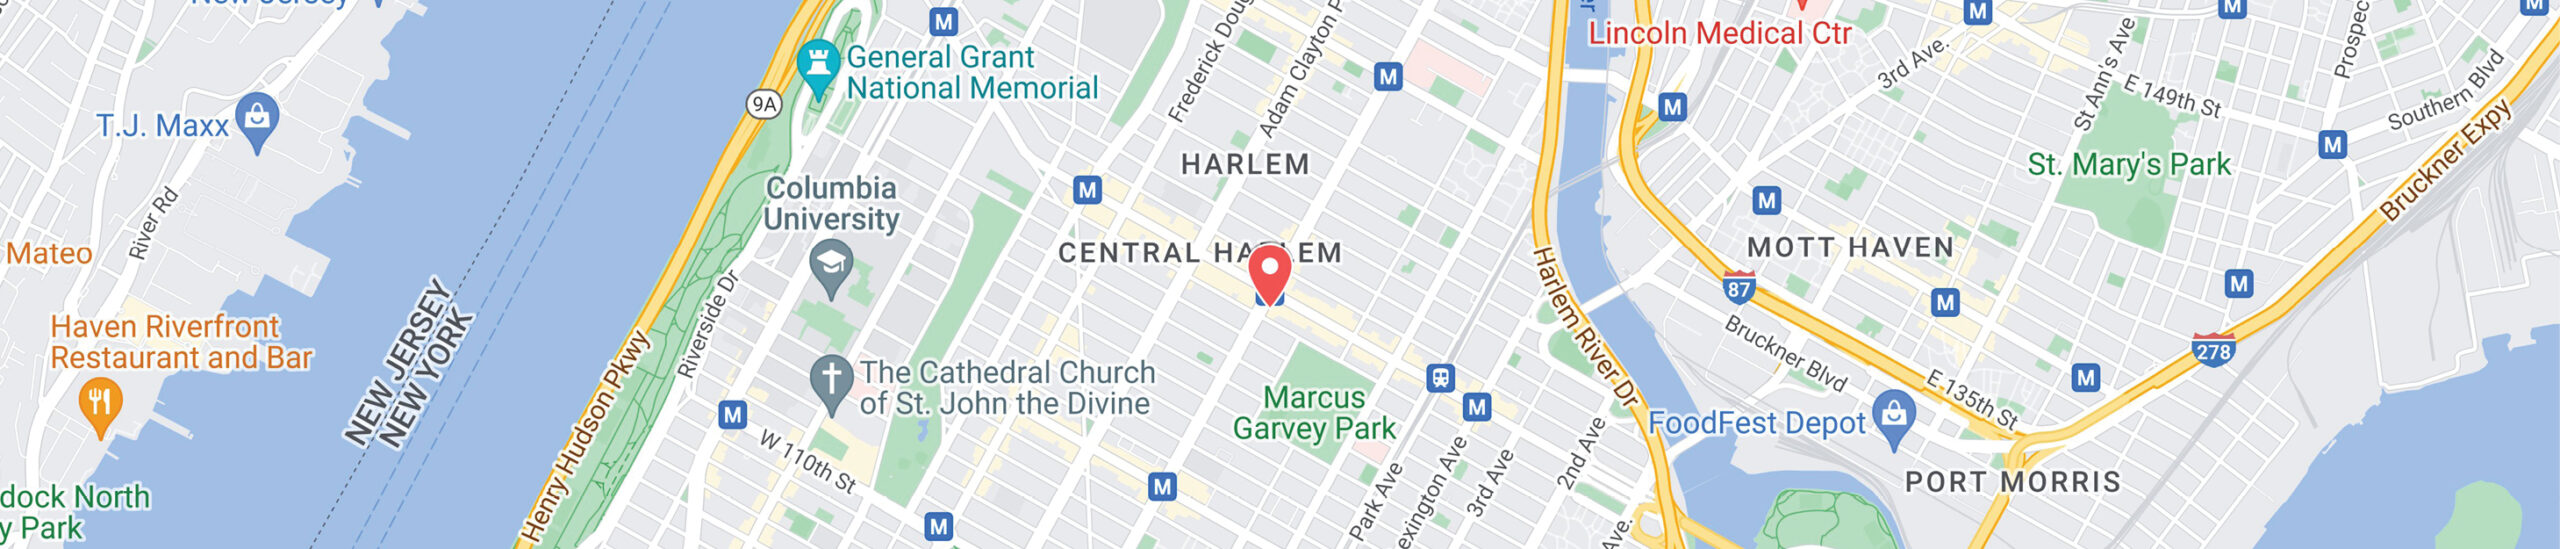 Harlem Office Location